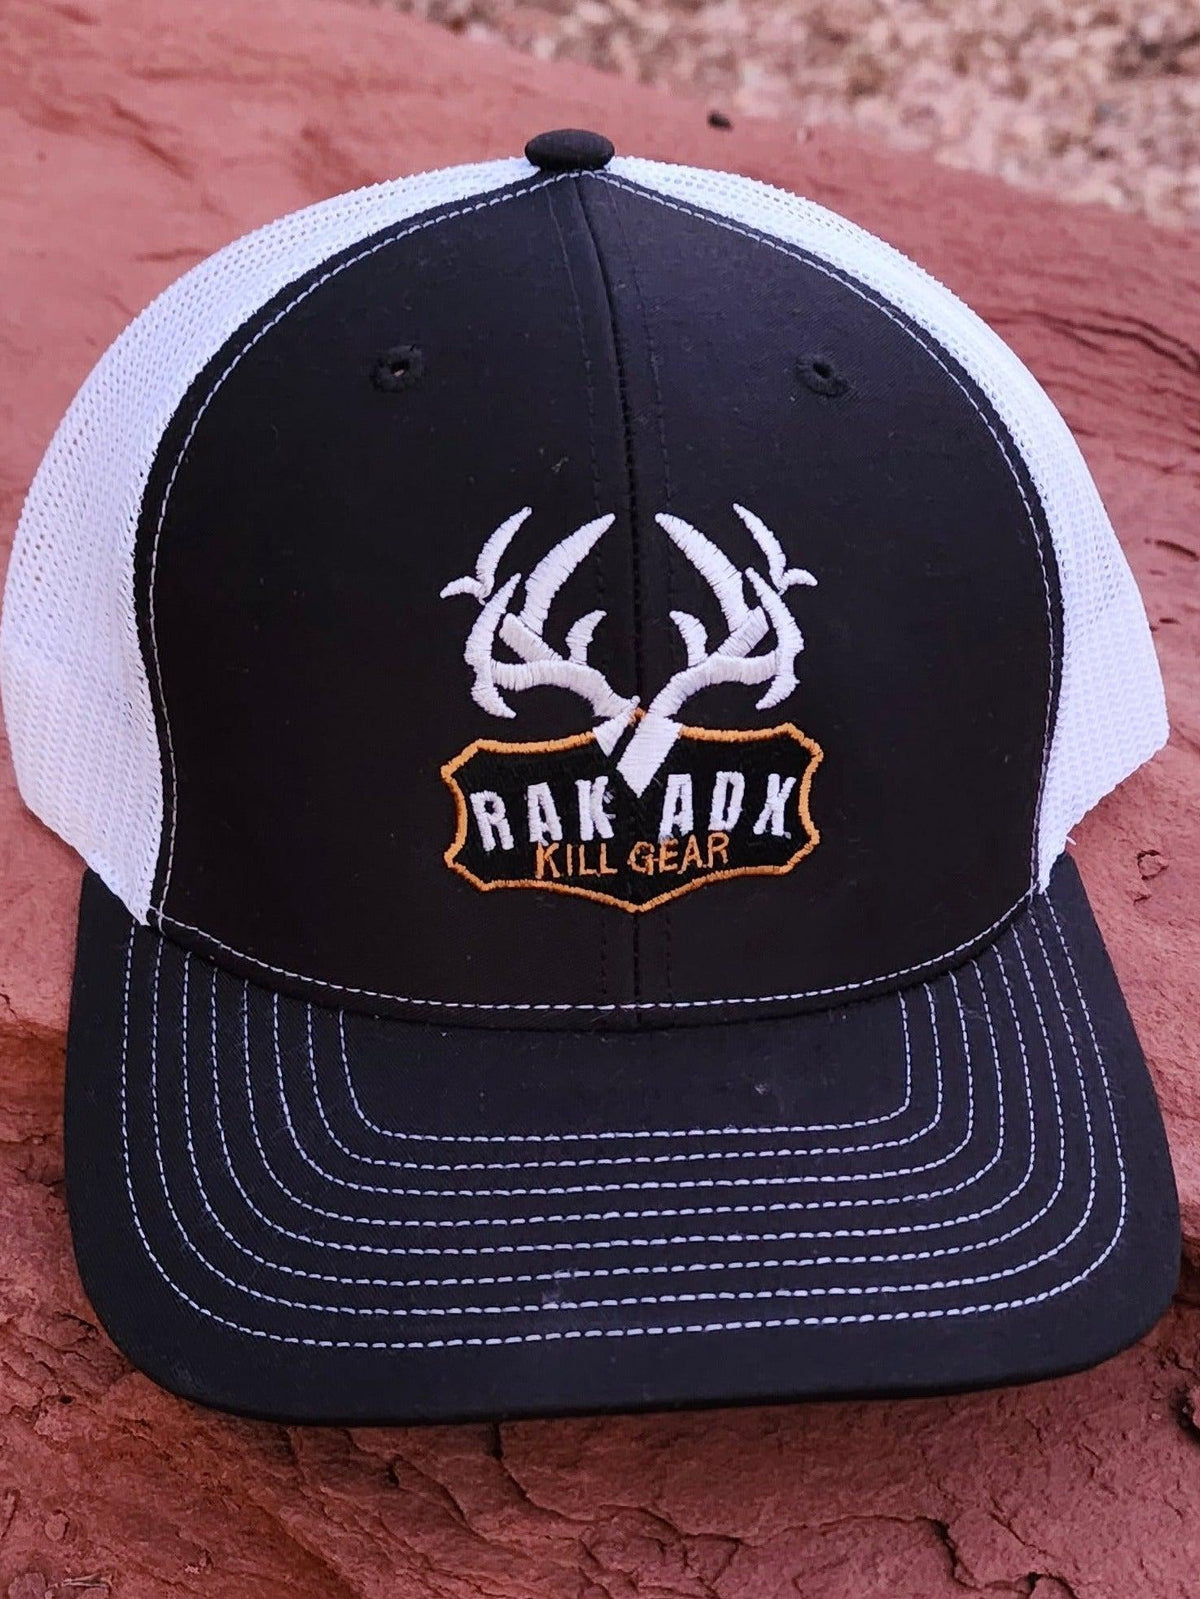 RakAdx Trophy Plaque Trucker Hat